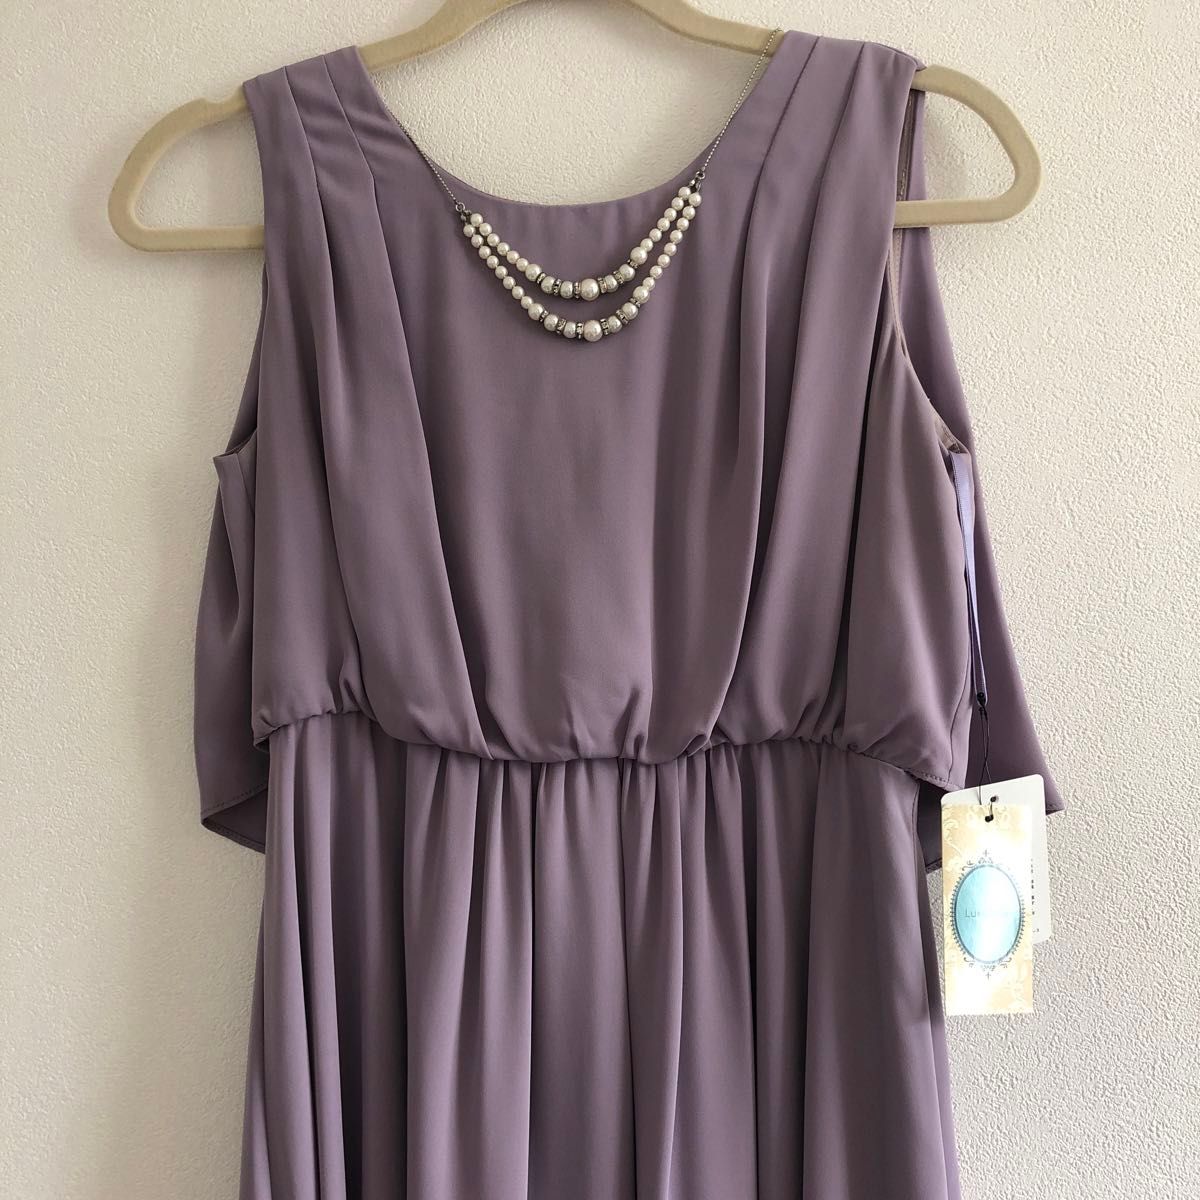 レディース Luxe brille ロングワンピース ドレス 結婚式 紫 パープル 新品未使用品 タグ付き 定価14000円